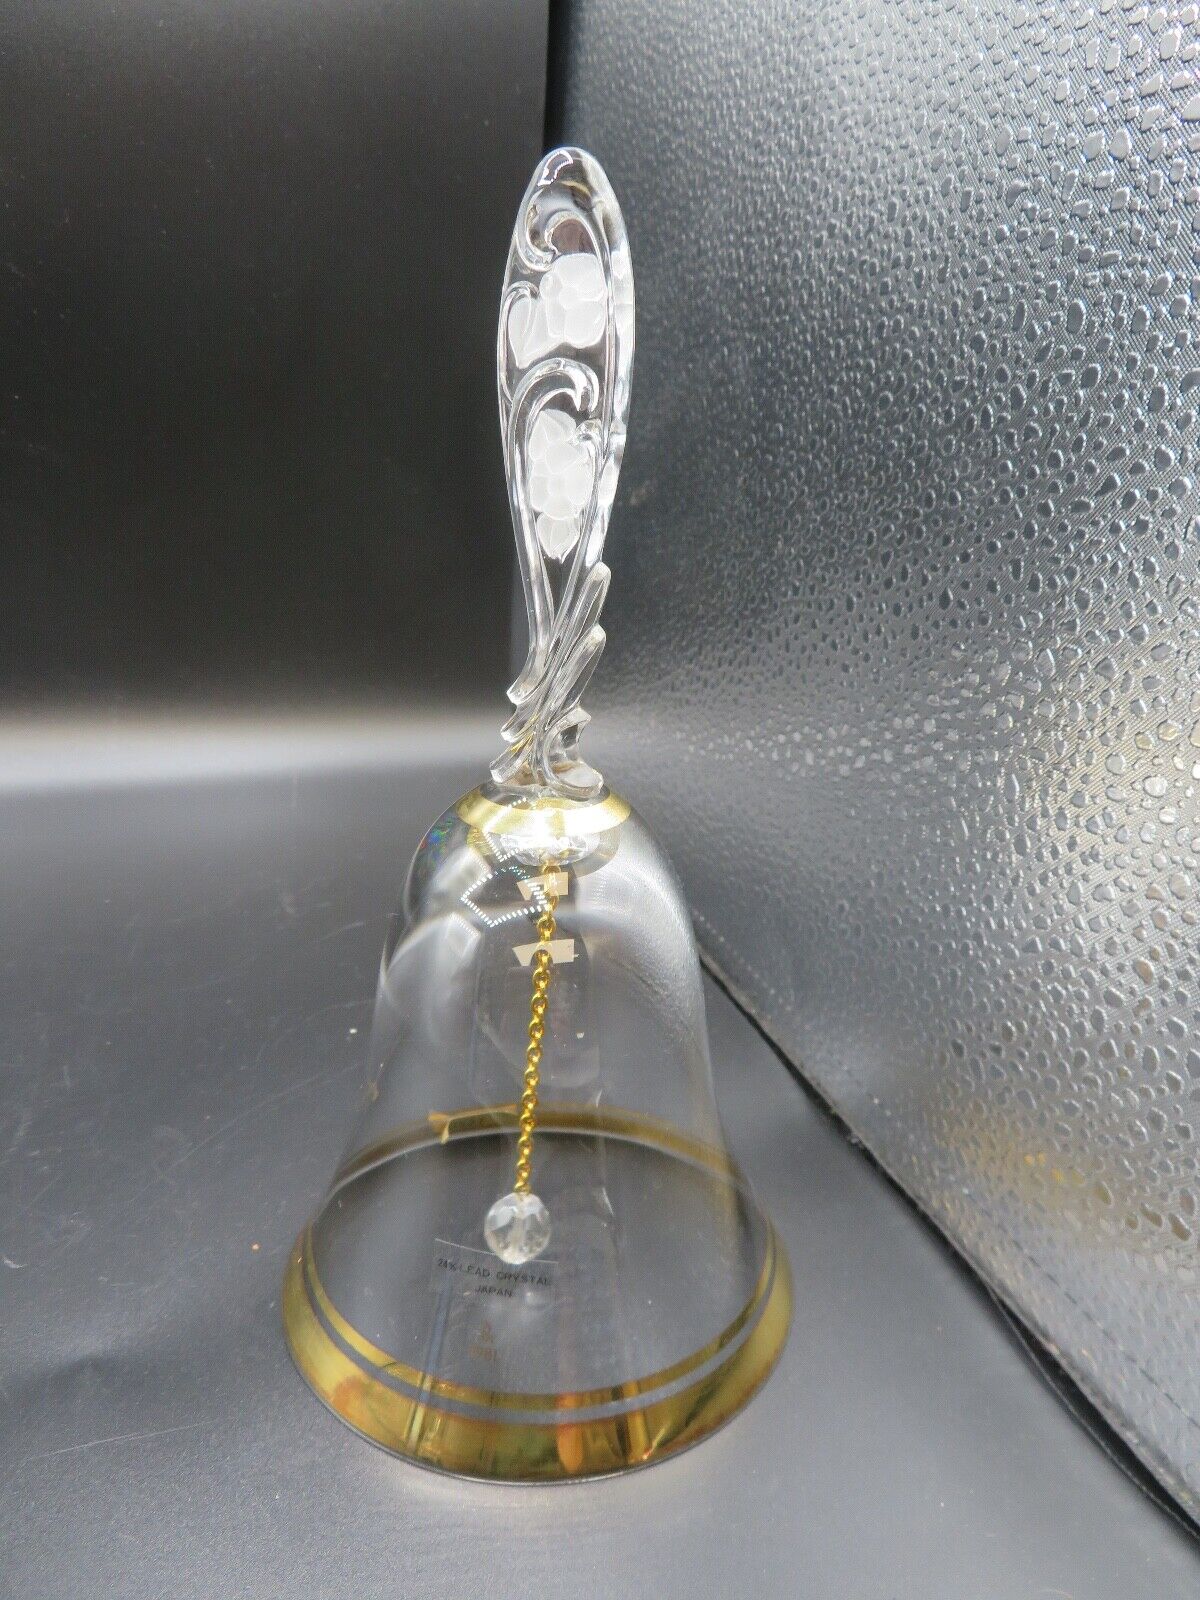 Vintage Sasaki 24% Lead Crystal Bell 1981 Handcrafted Japan 18K Gold Gilt